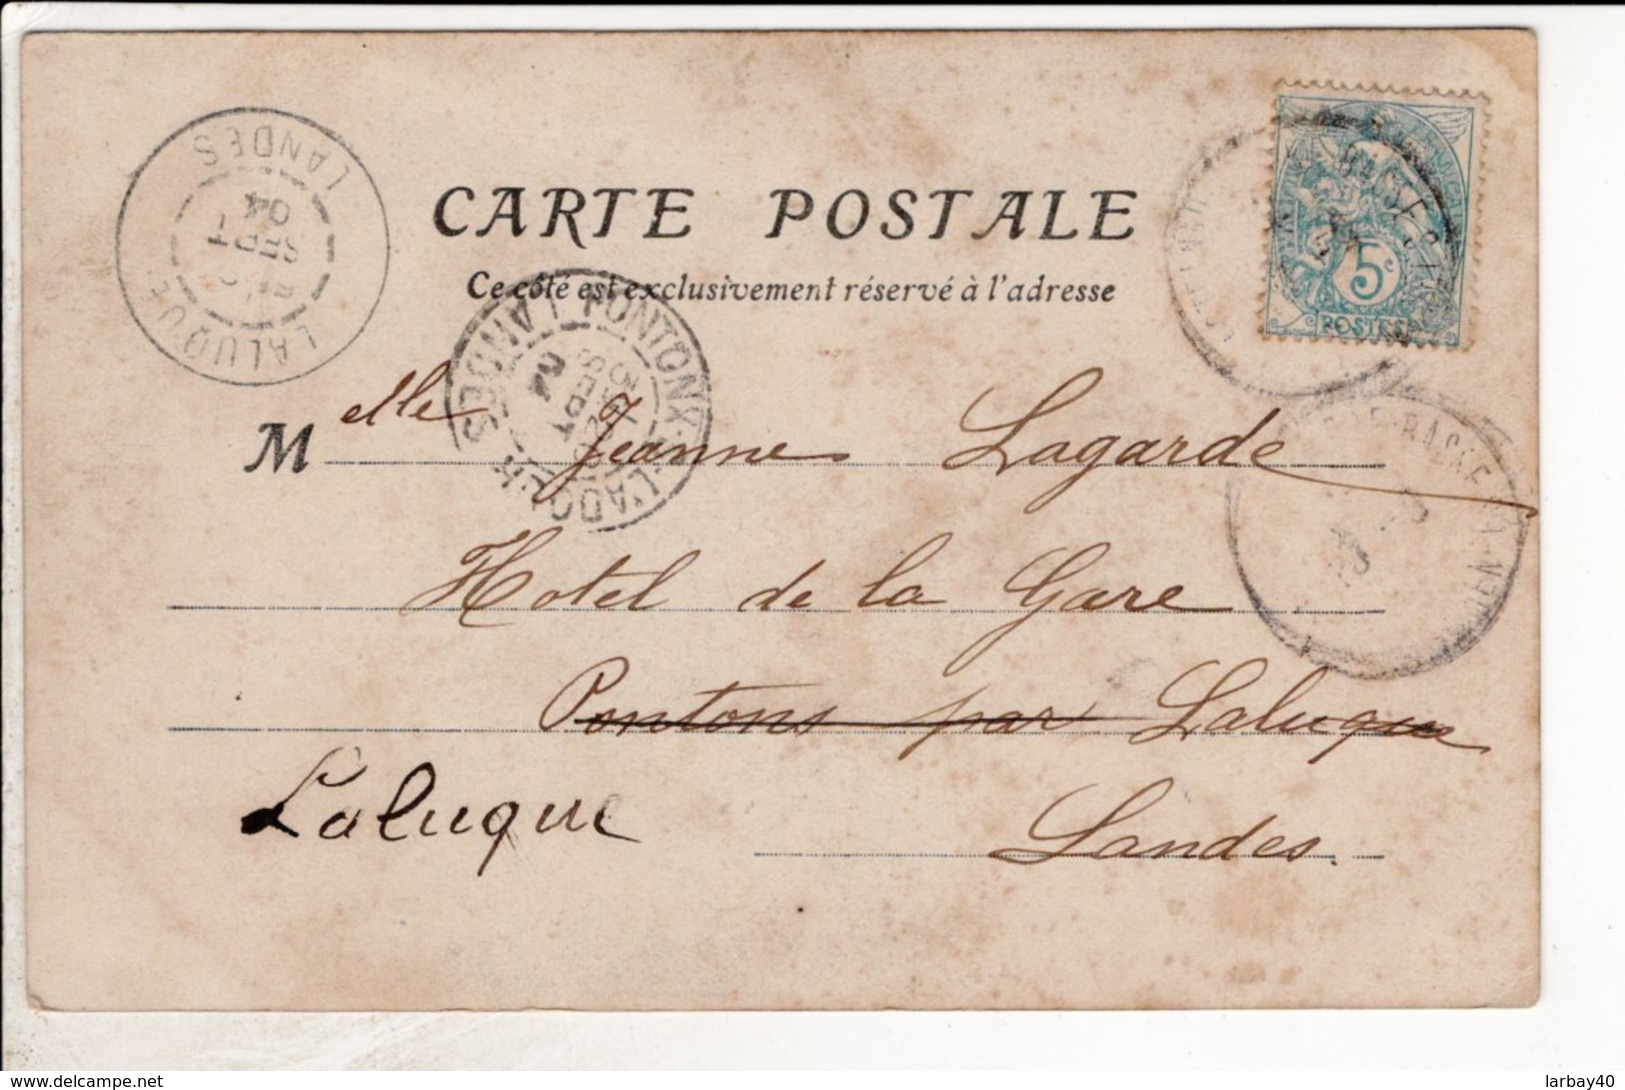 Cpa Carte Postale Ancienne  - CASTELNAU RIVIERE BASSE Ruines Du Donjon Carré Du XIème Siècle - Castelnau Riviere Basse